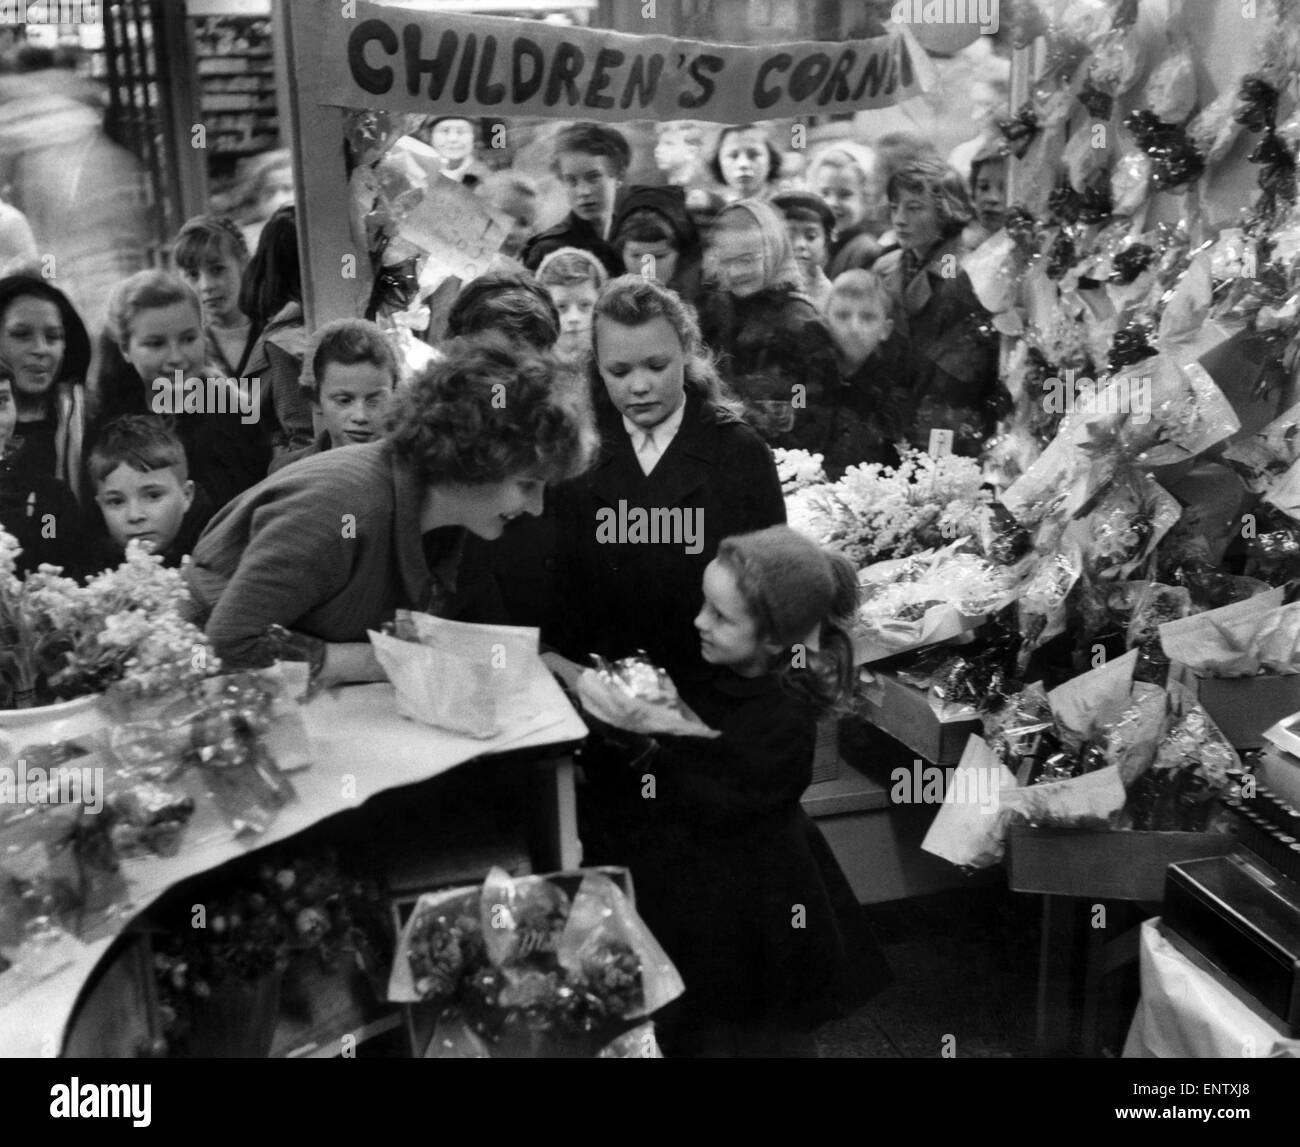 Une foule d'enfants à acheter leur décrochage fleuristes fleur pour le maternage dimanche. 7 mars 1959 Banque D'Images